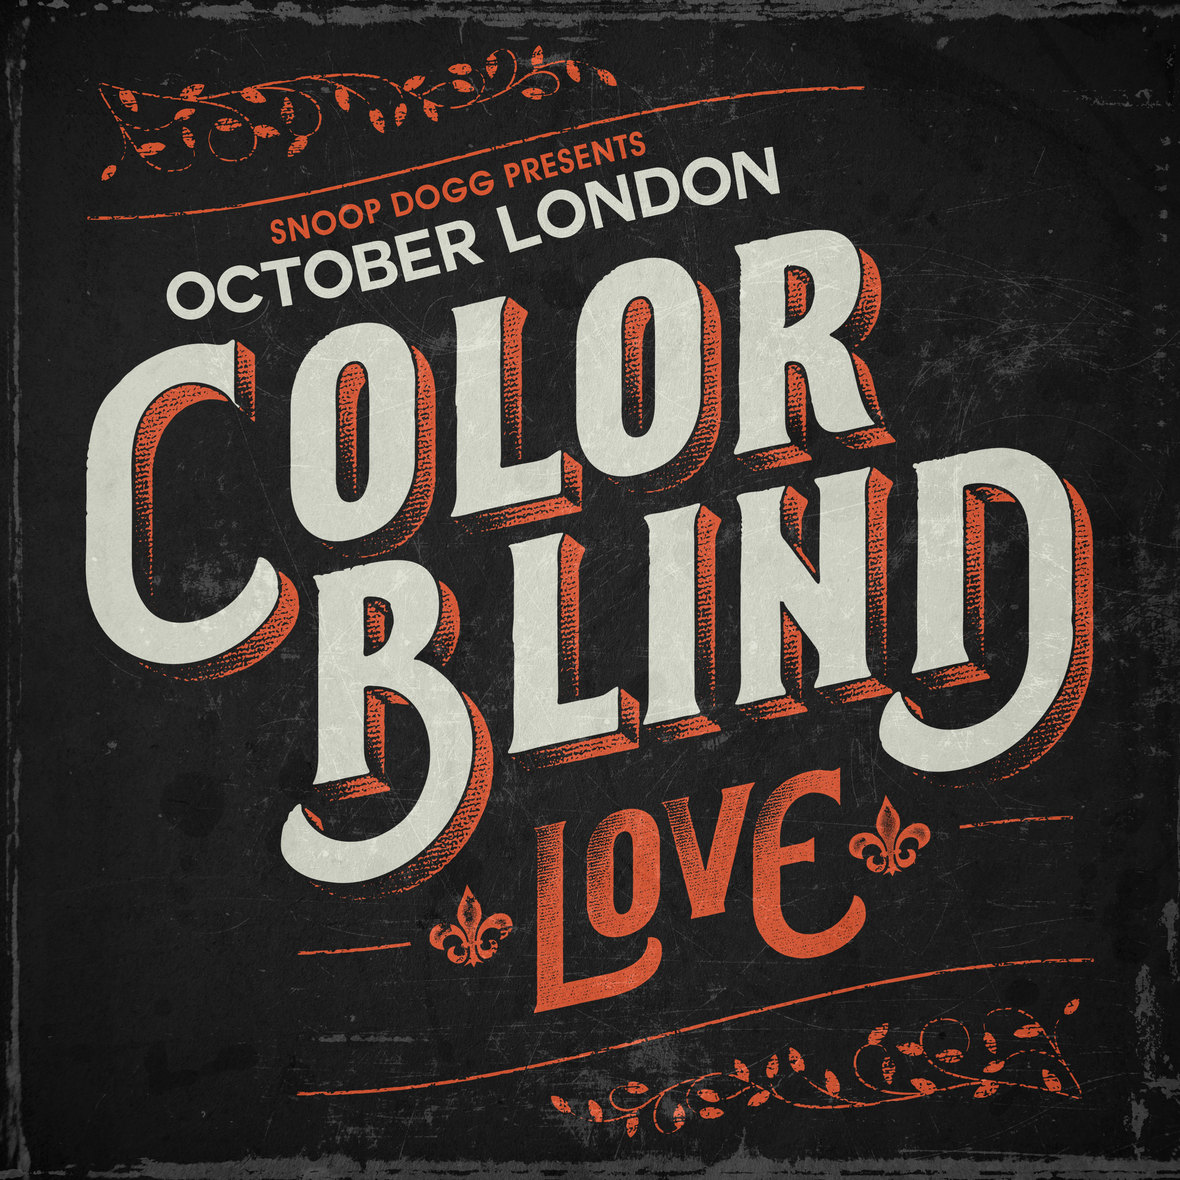 Snoop Dogg & Protege October London Release "Color Blind: Love" Short Film